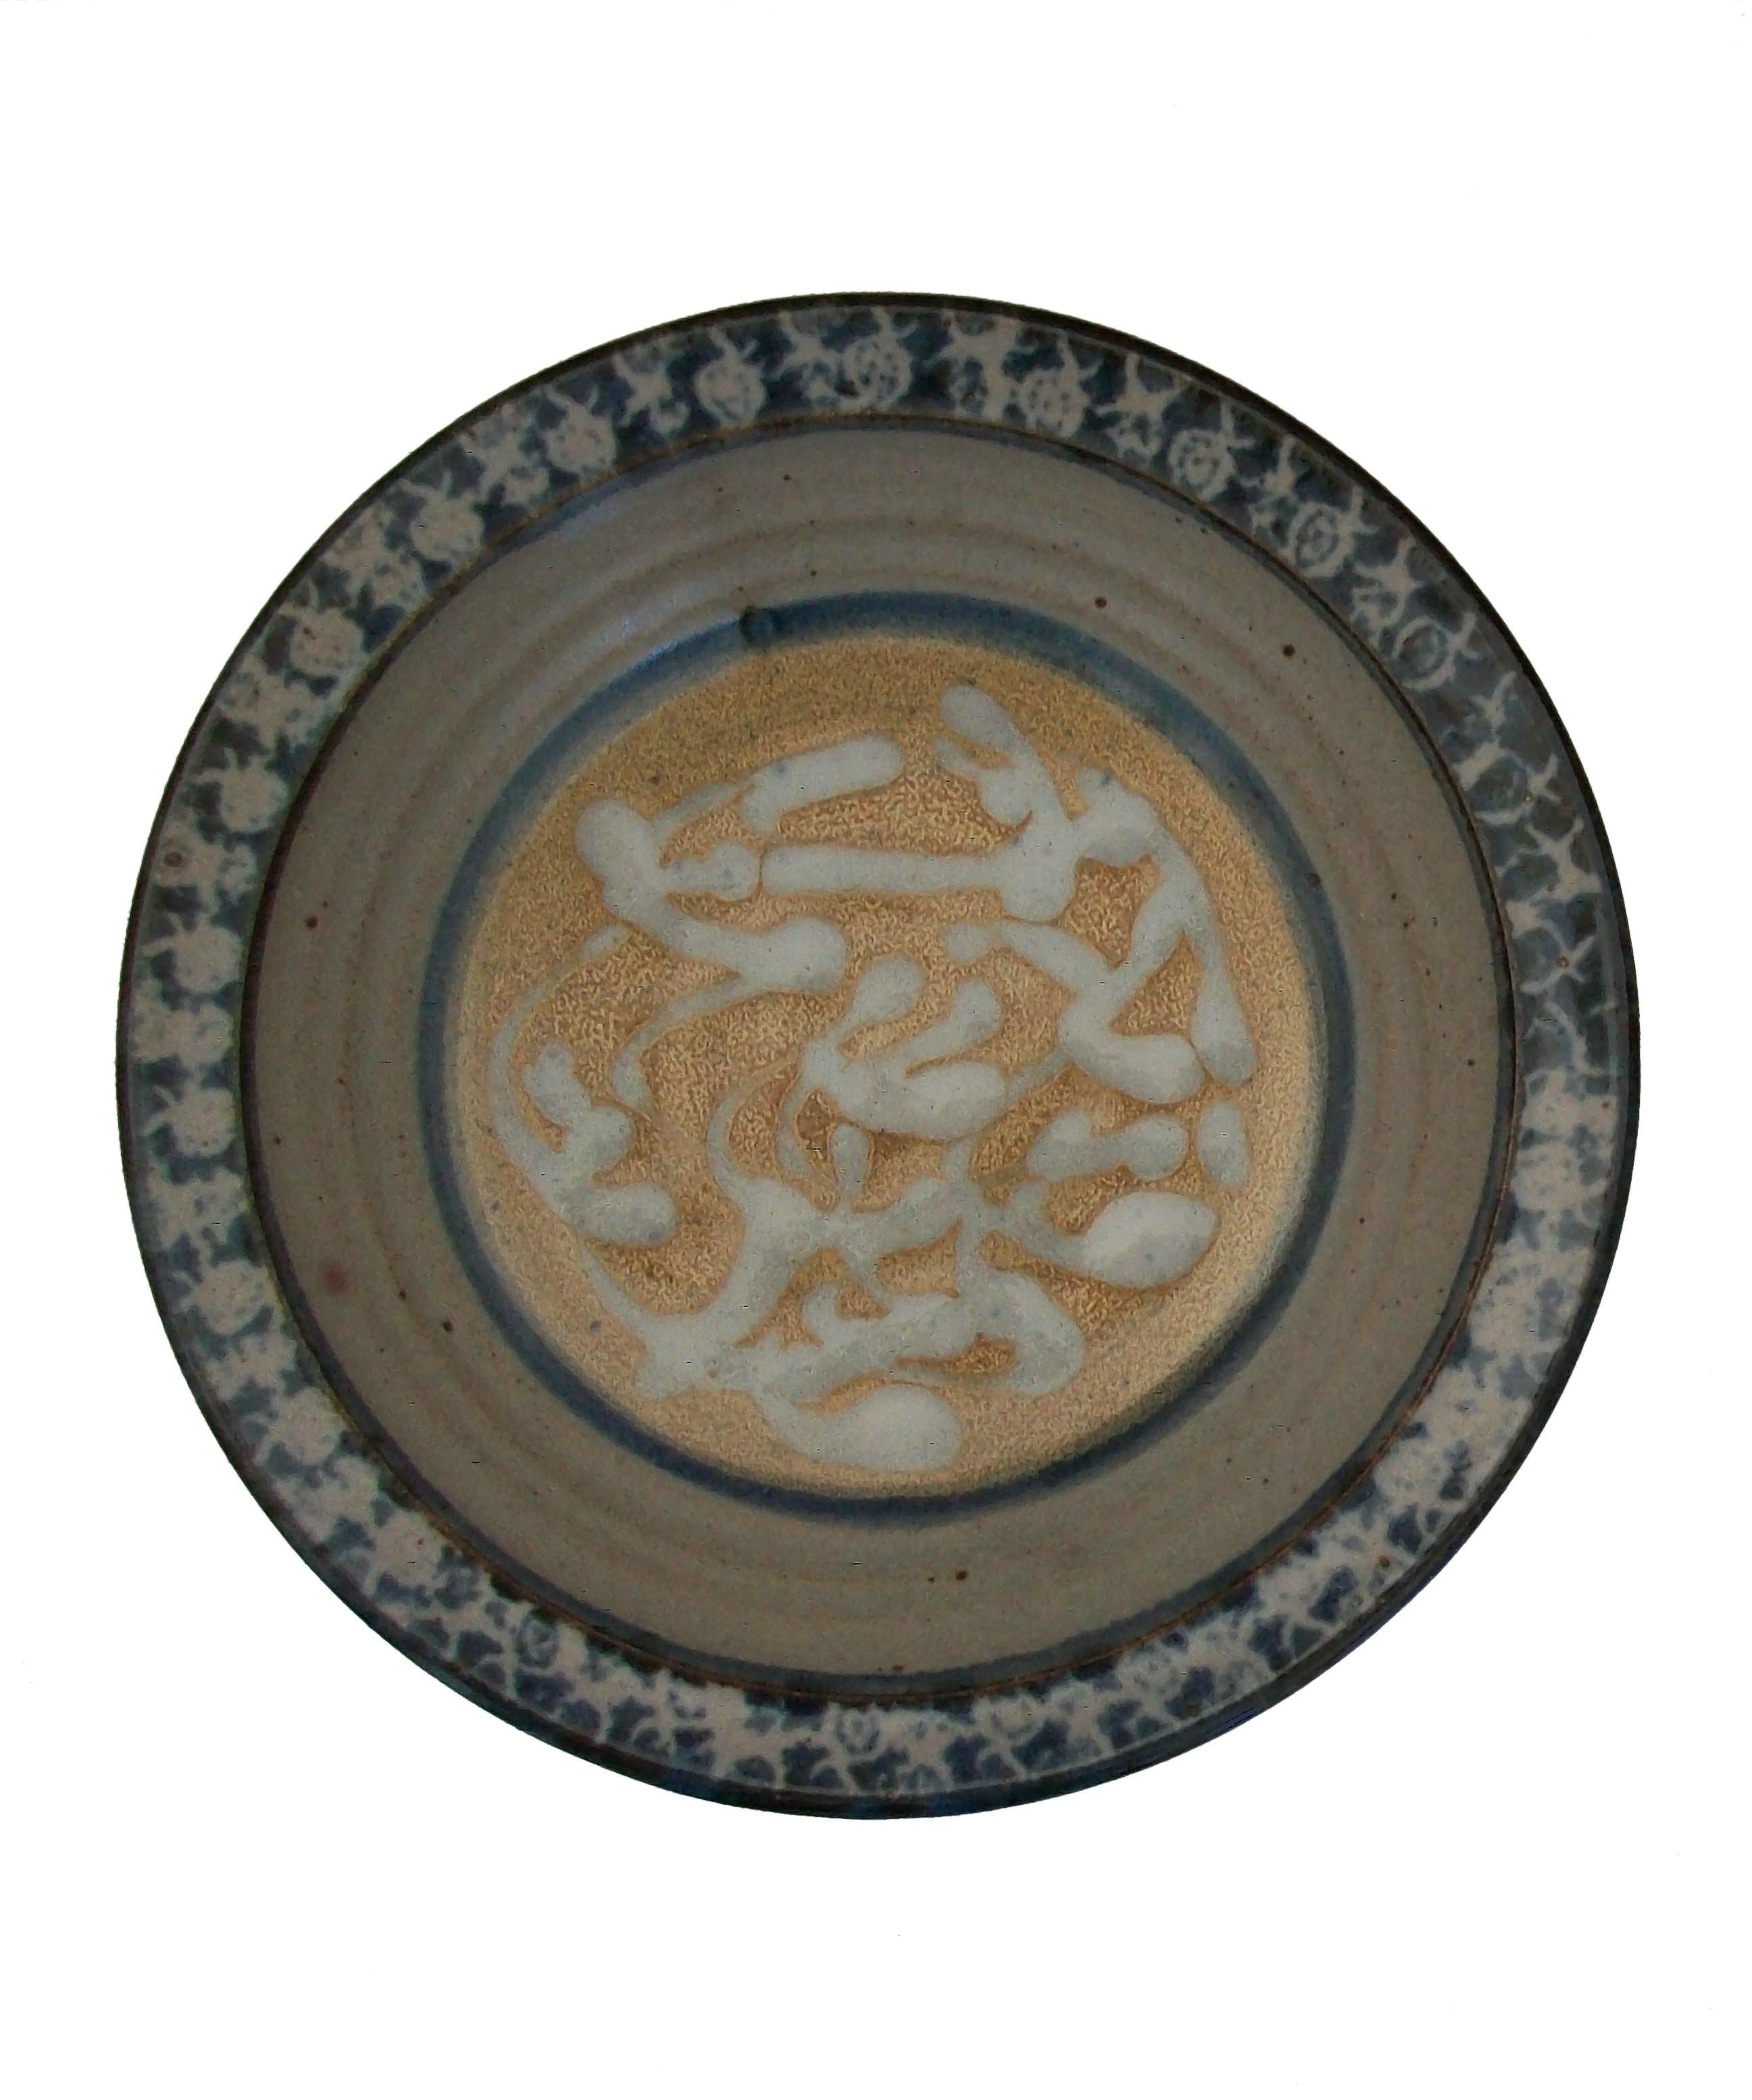 SALTSPRING POTTERY - Bol décoratif vintage en poterie de studio - fait à la main - avec une bordure et un médaillon central peints à la main sur une glaçure grise semi-mate - signé / marque imprimée sur la base - Canada - fin du 20e